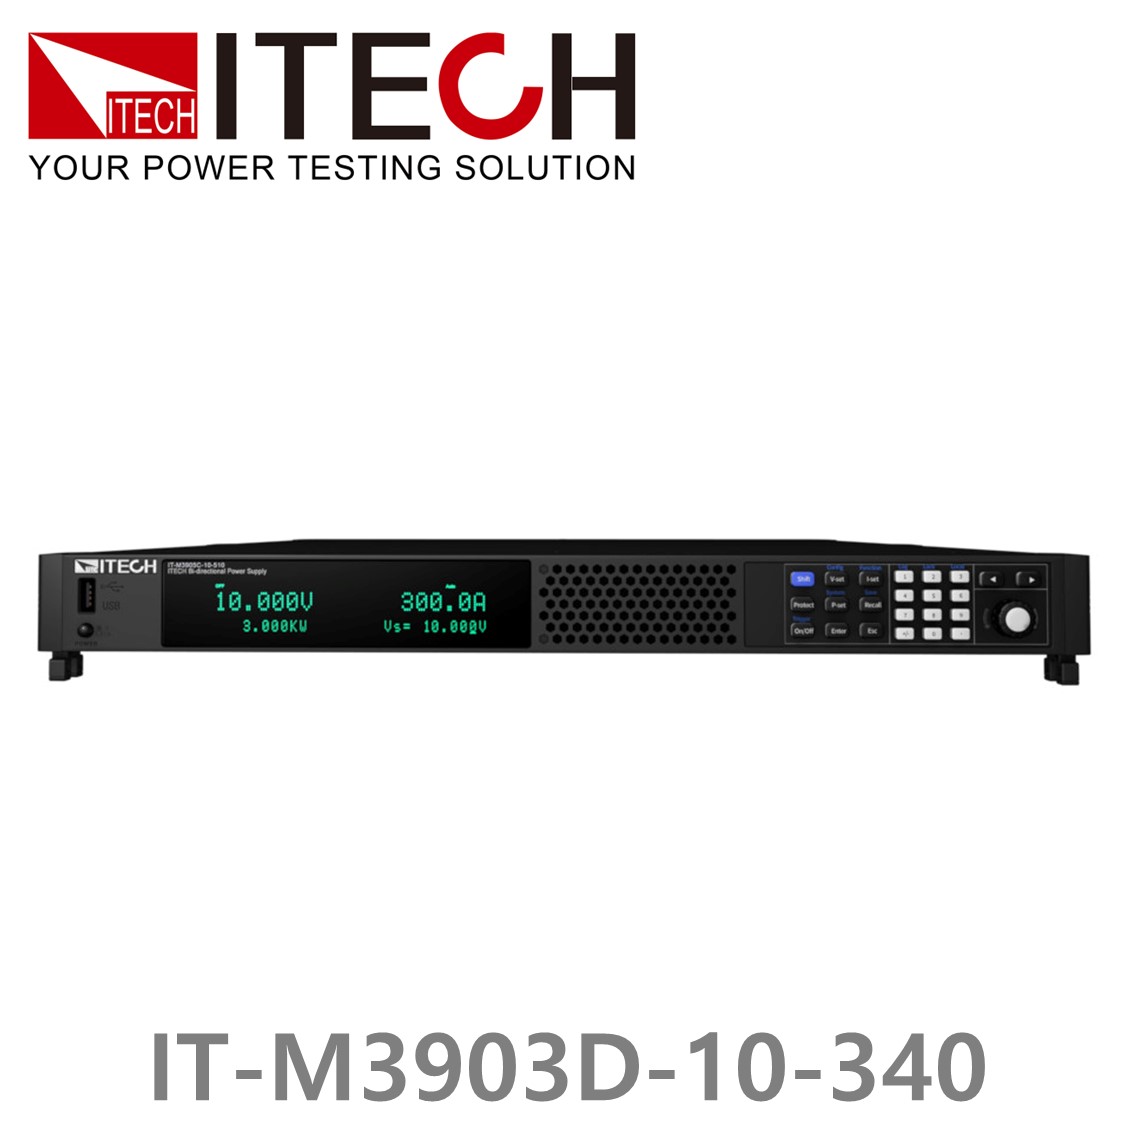 [ ITECH ] IT-M3903D-10-340 양방향 프로그래머블 DC전원공급기, DC파워서플라이